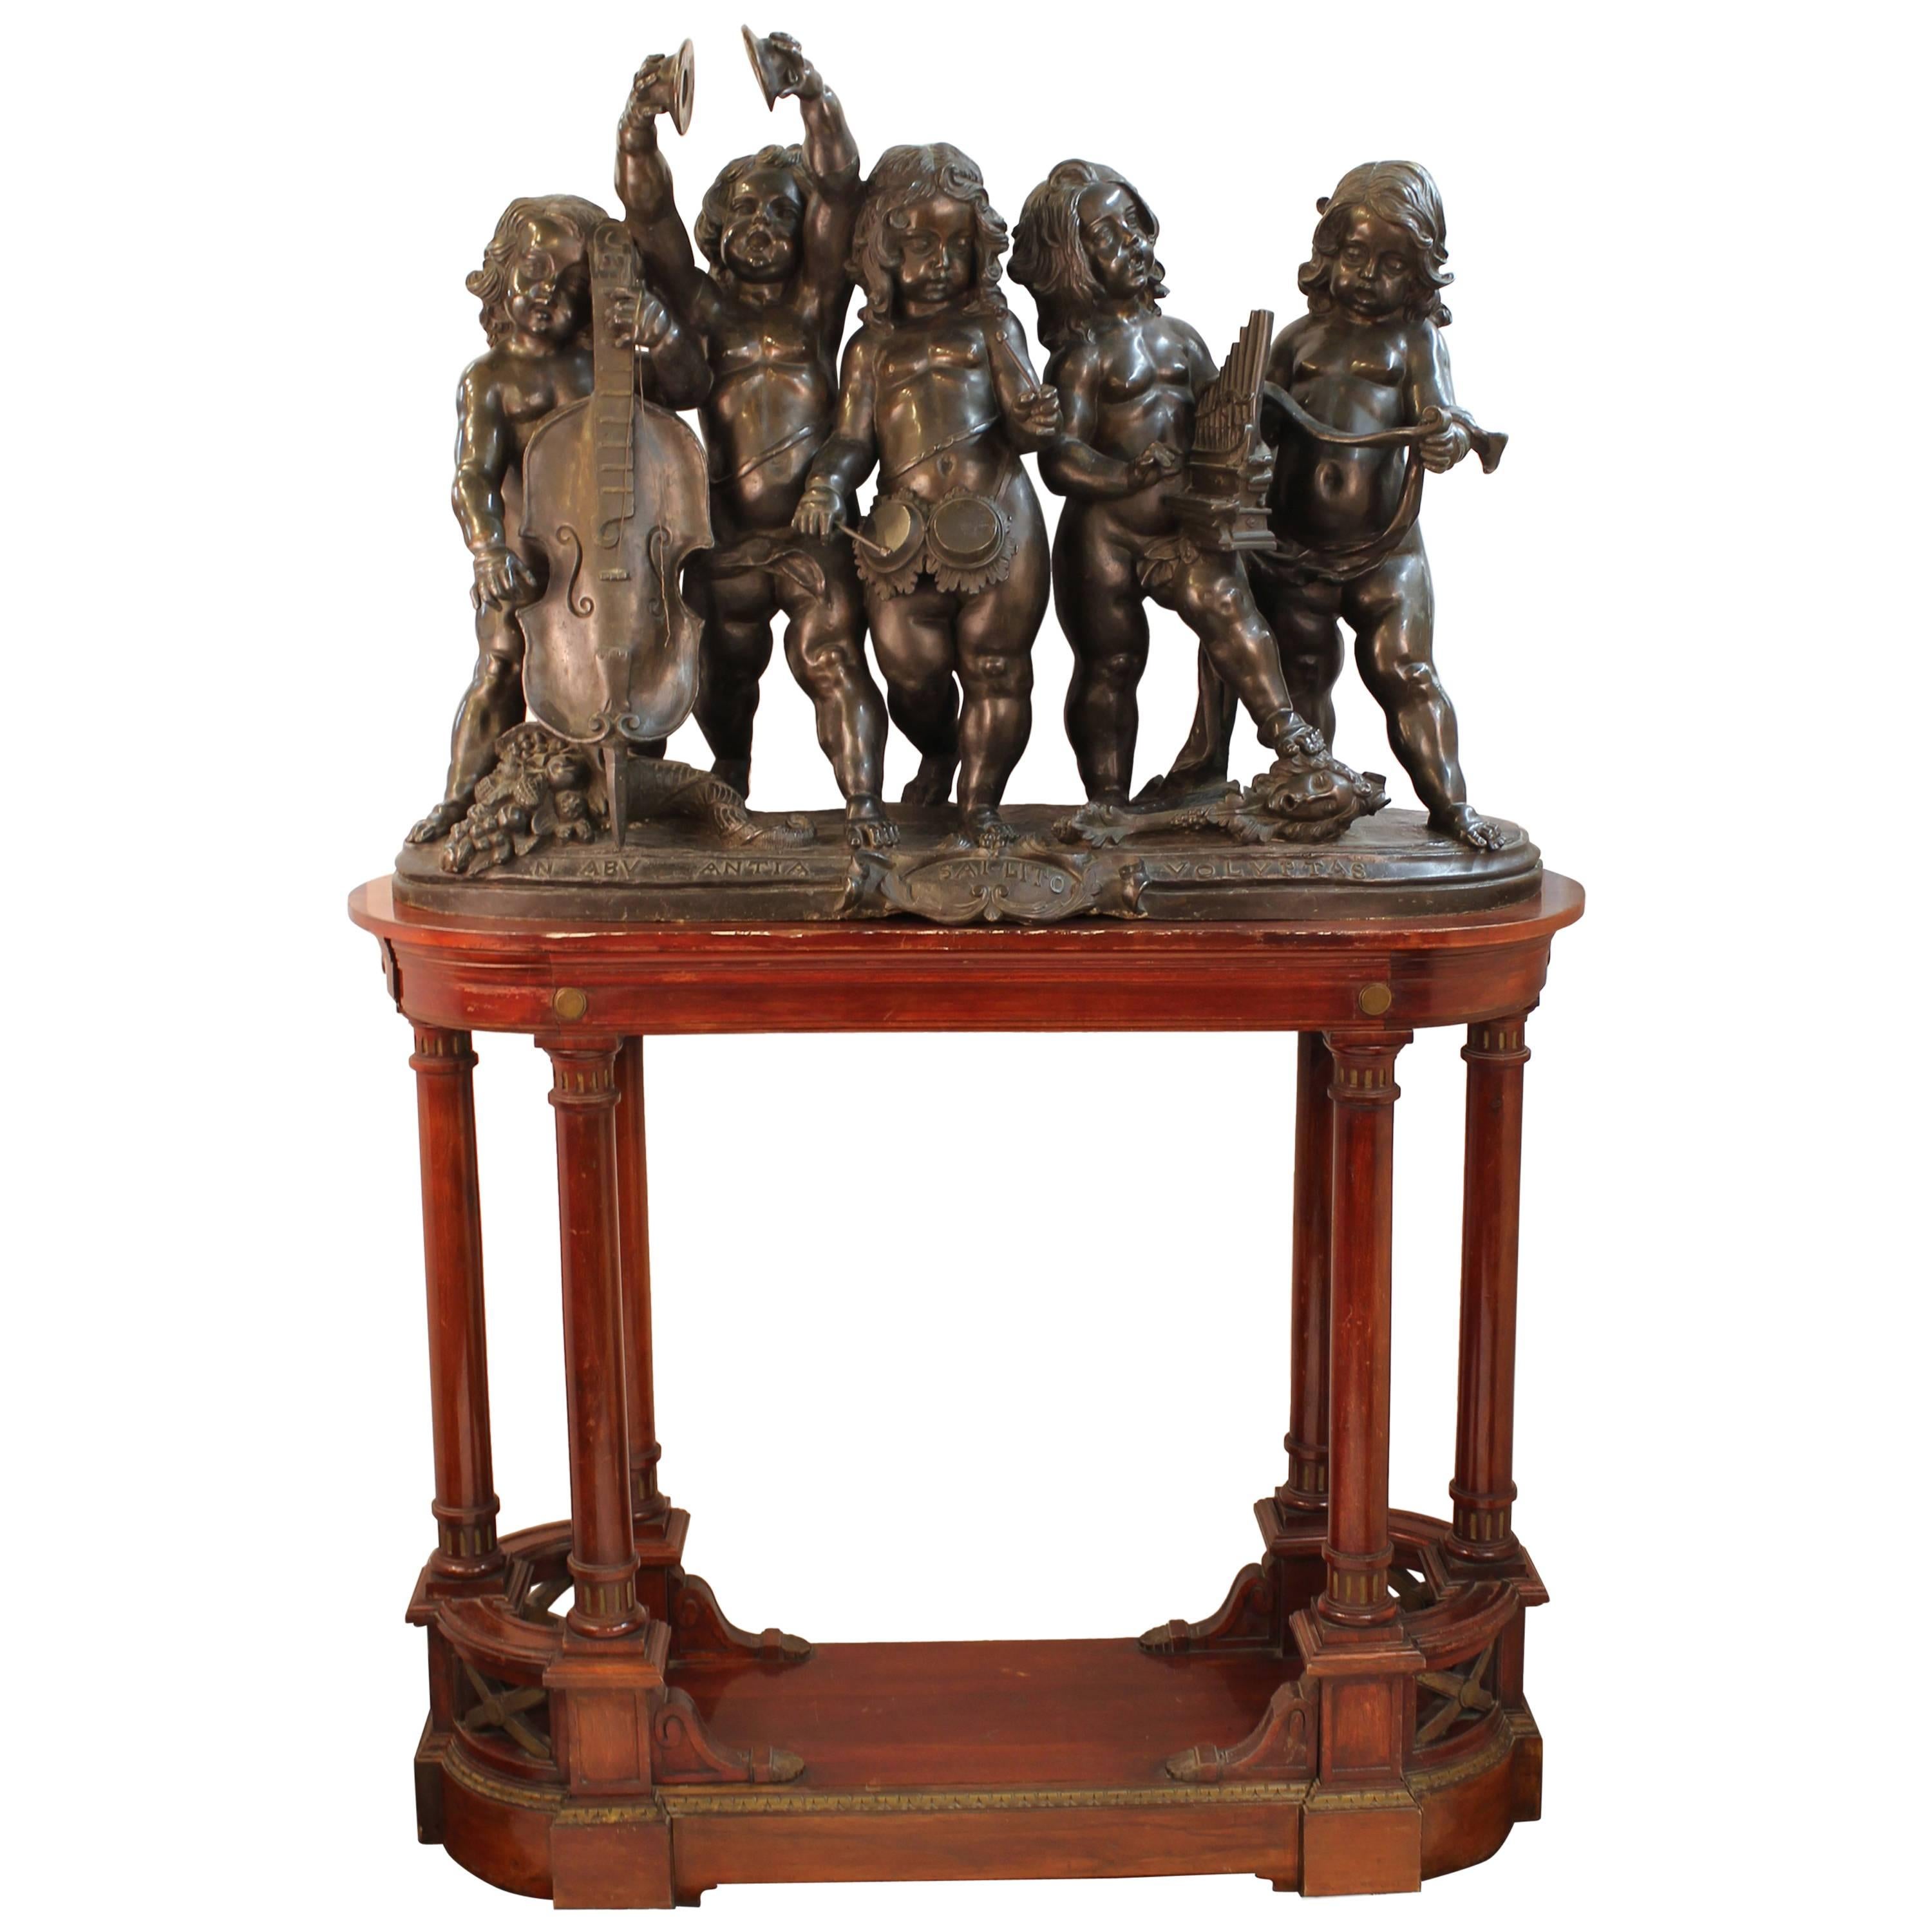 Italian Renaissance Revival Bronze Putti Concerto Attributed to Ferdiando Vichi